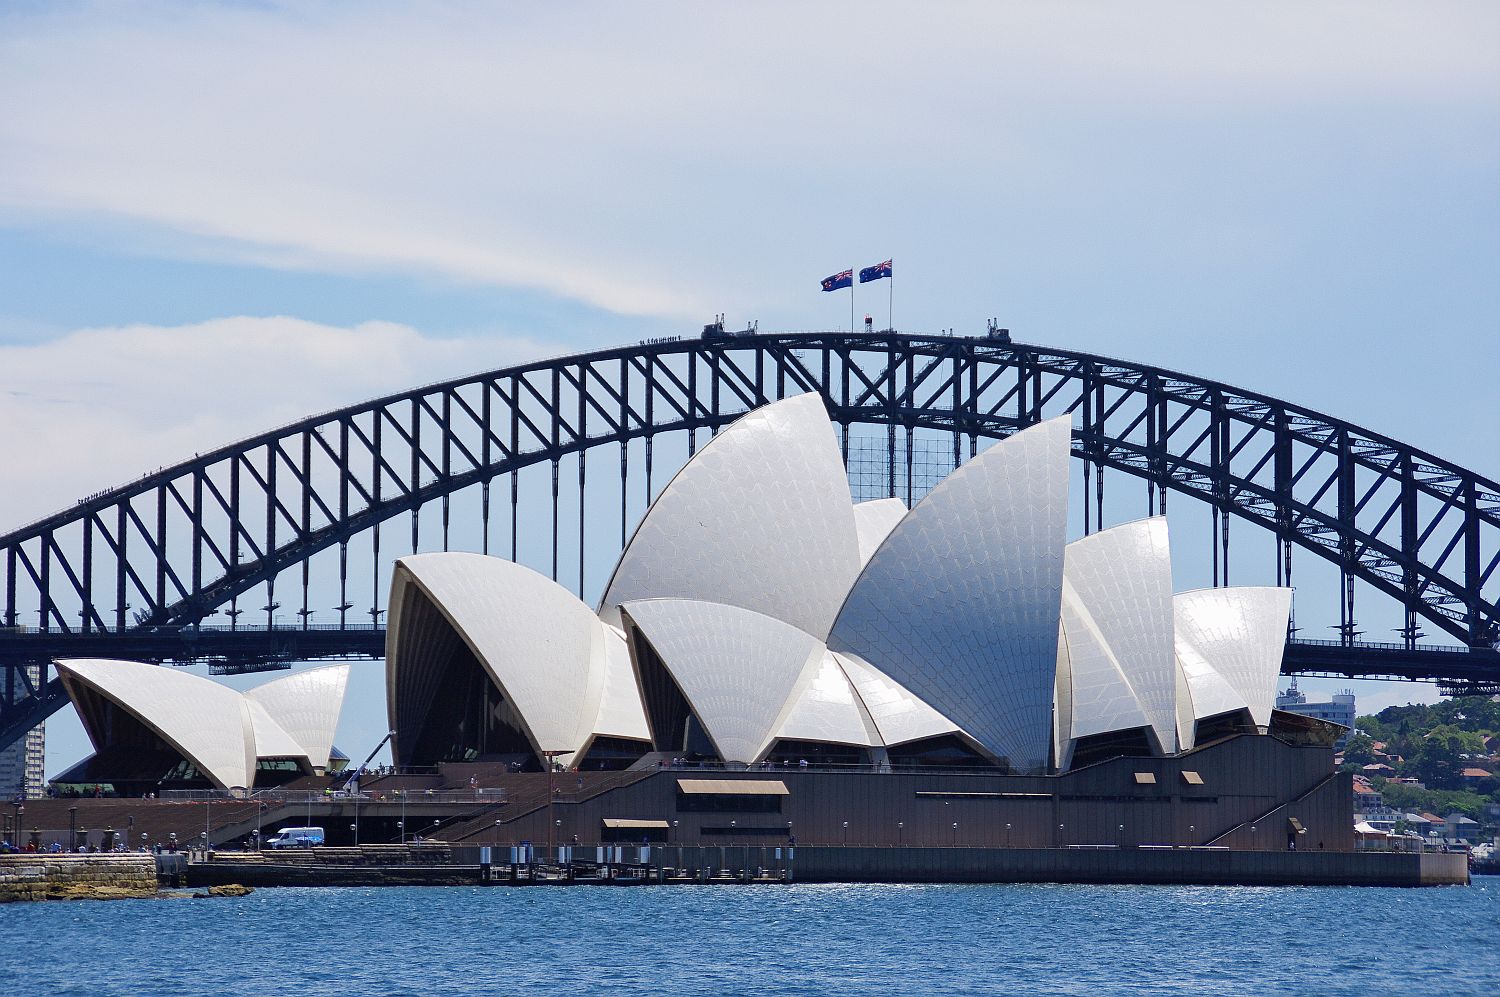 世界遺産 シドニー オペラハウス オーストラリア シドニー 行き方 見学のしかた 文化遺産見学案内所